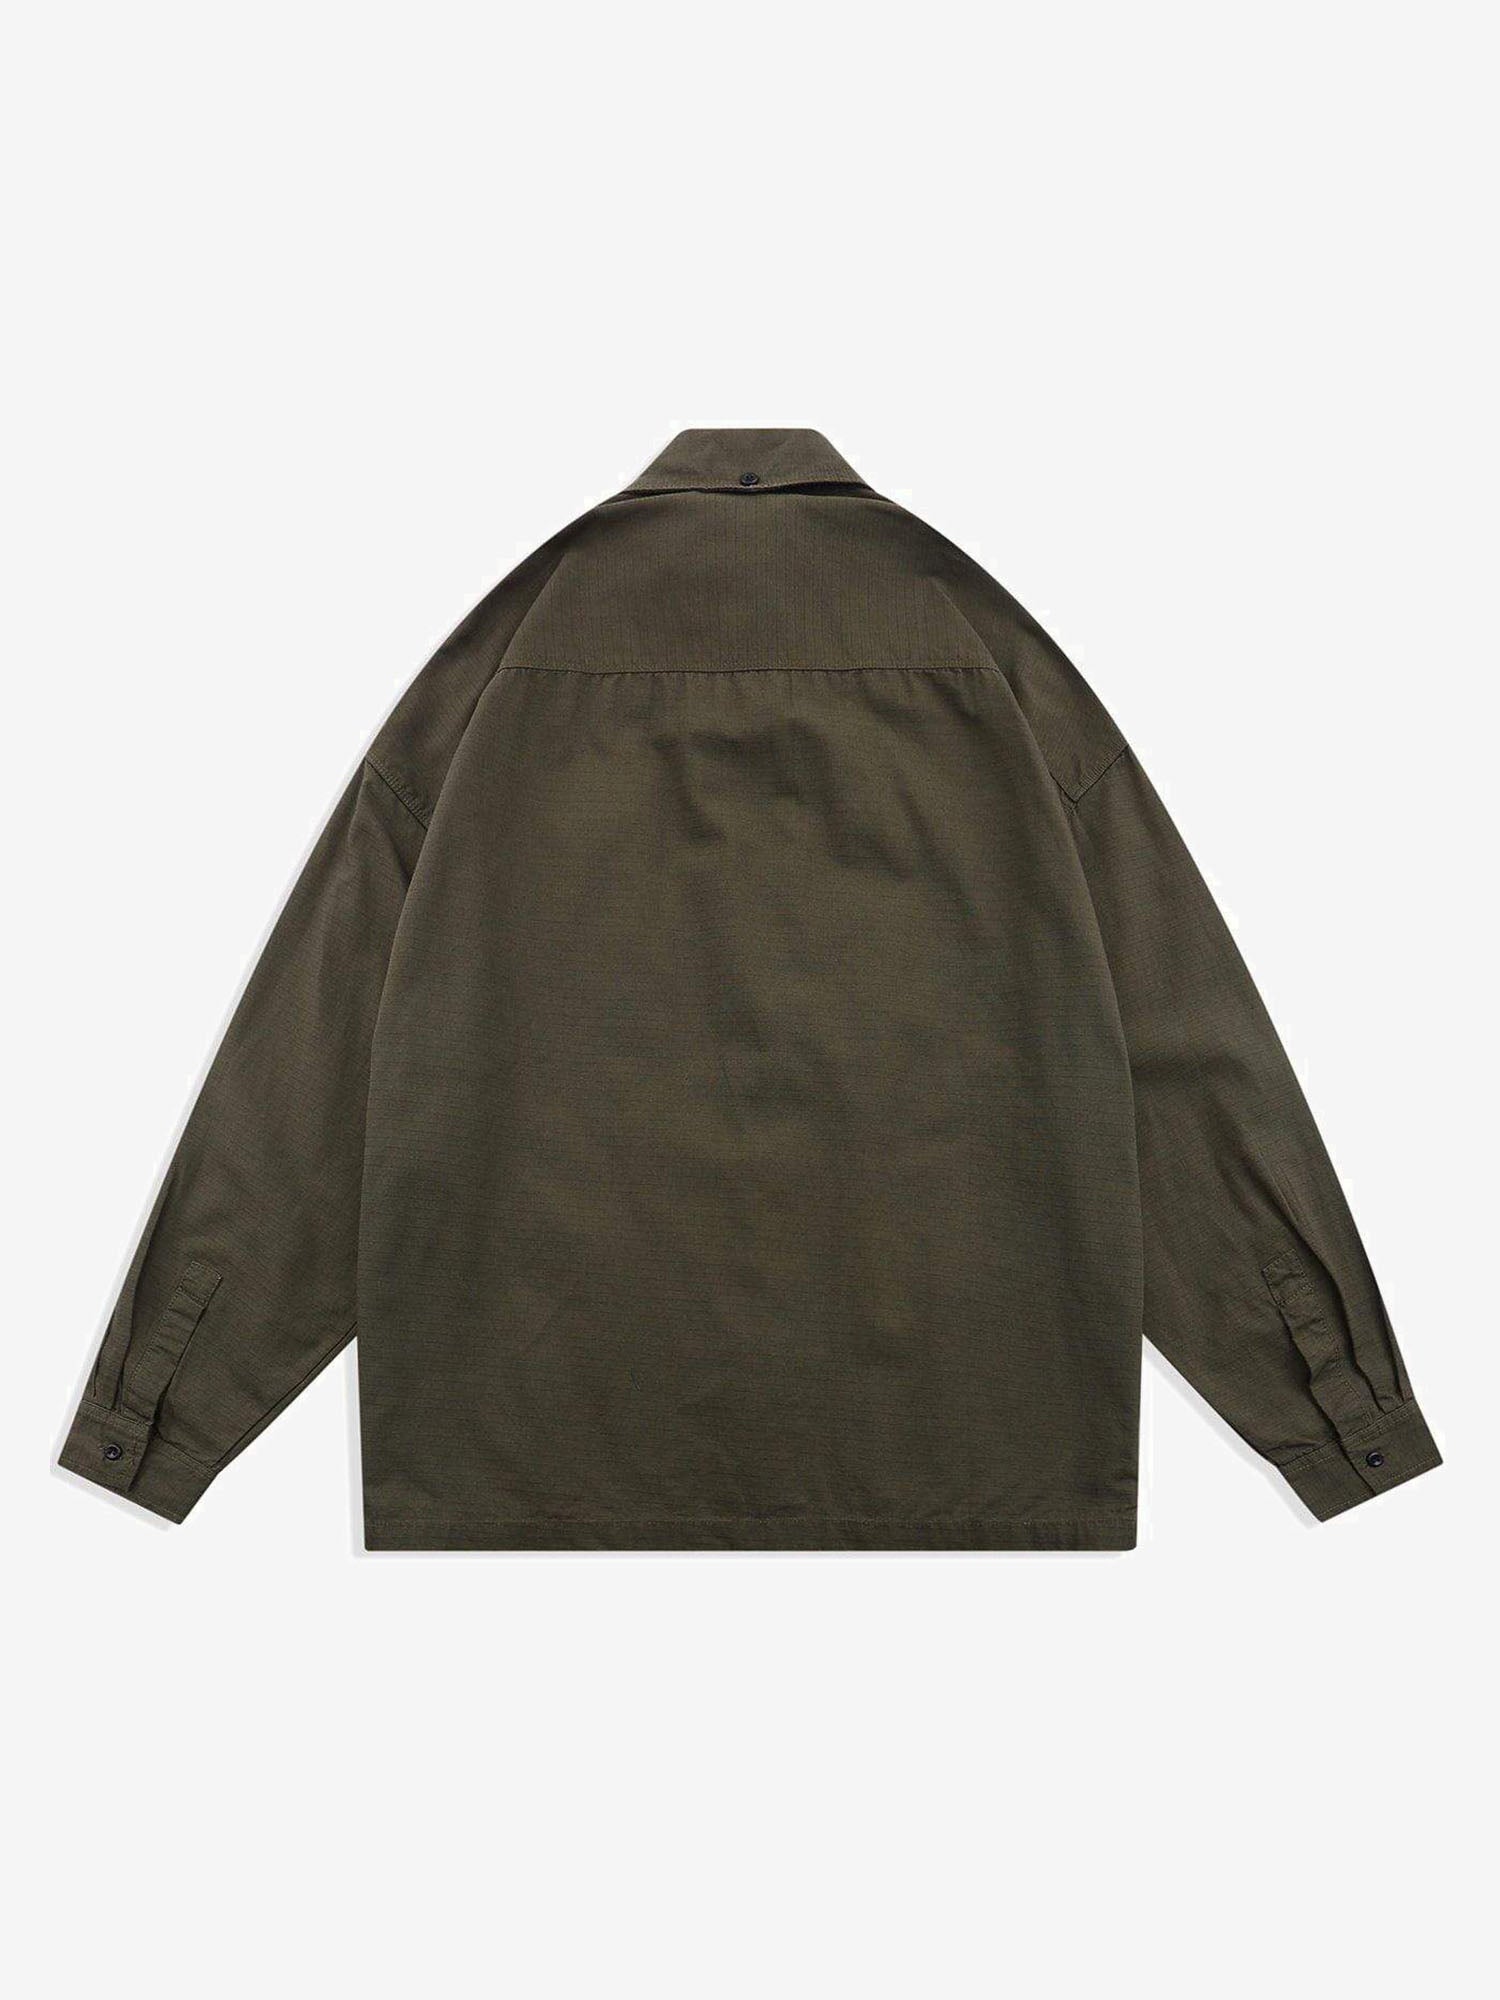 JUSTNOTAG  Multi-Pocket Plain Long Regular Sleeve Shirt